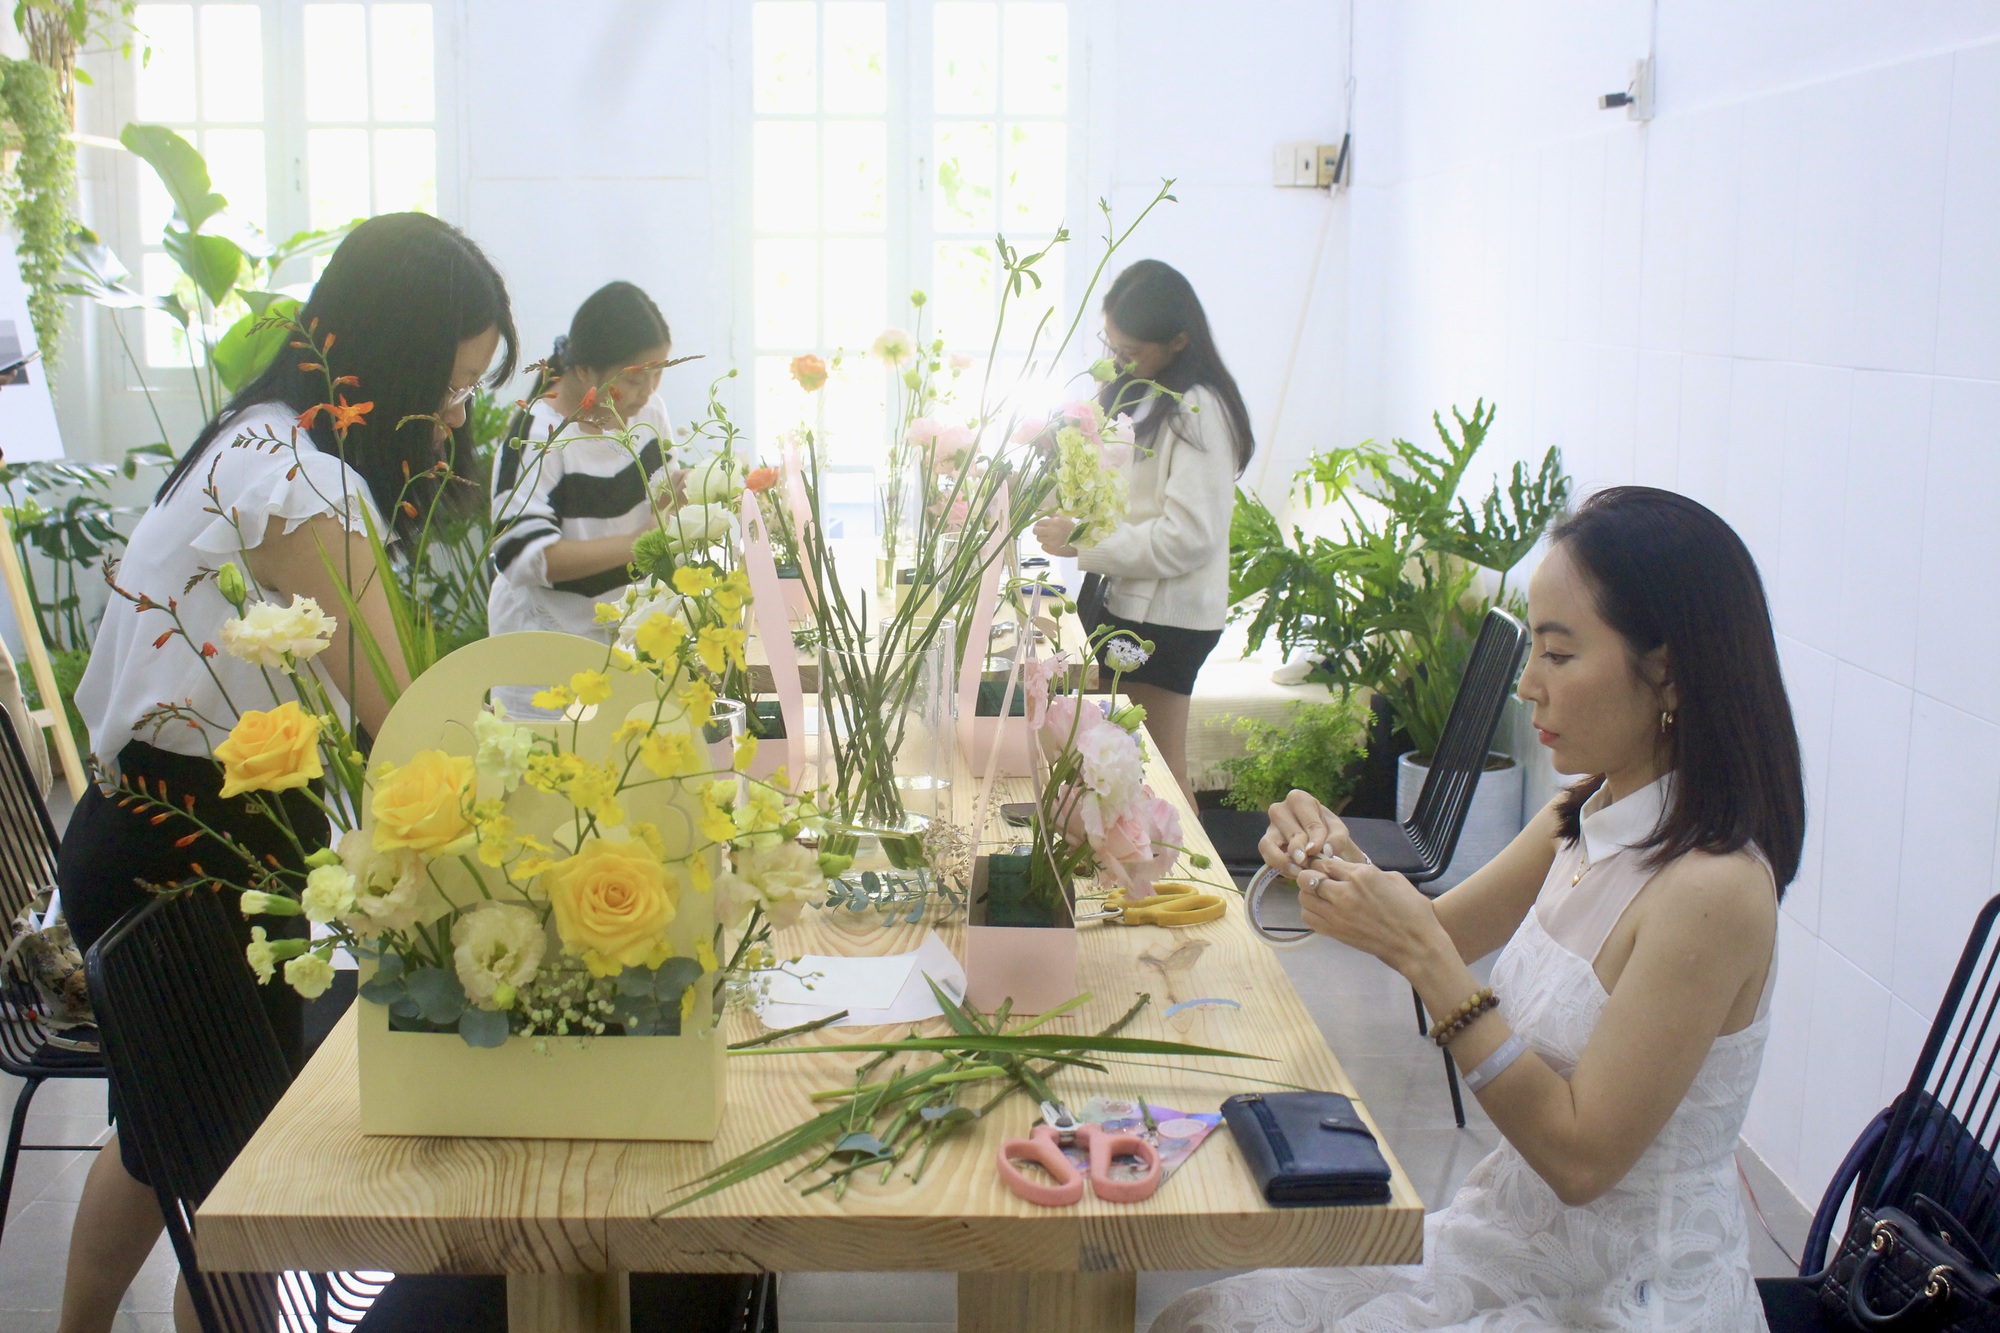 Workshop chữa lành không người dạy, không ồn ào, chỉ có mình với hoa tại Sài Gòn - Ảnh 5.